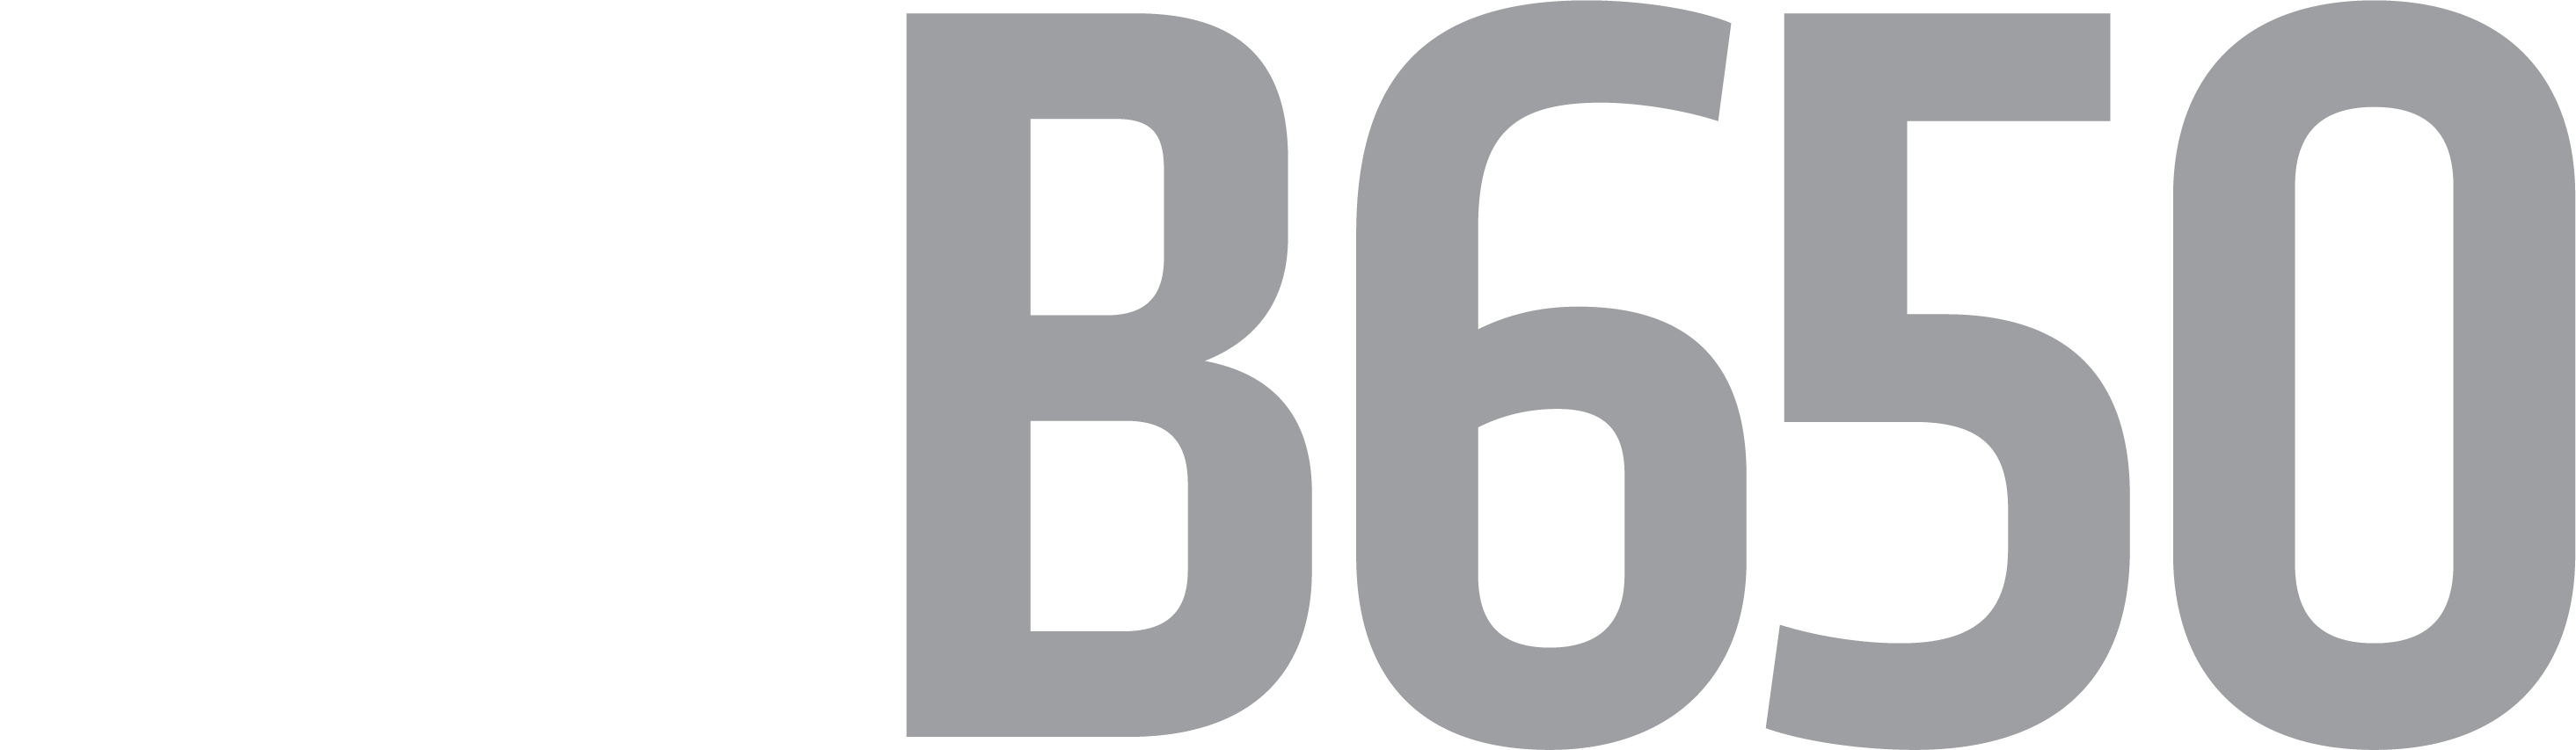 logo AMD B650